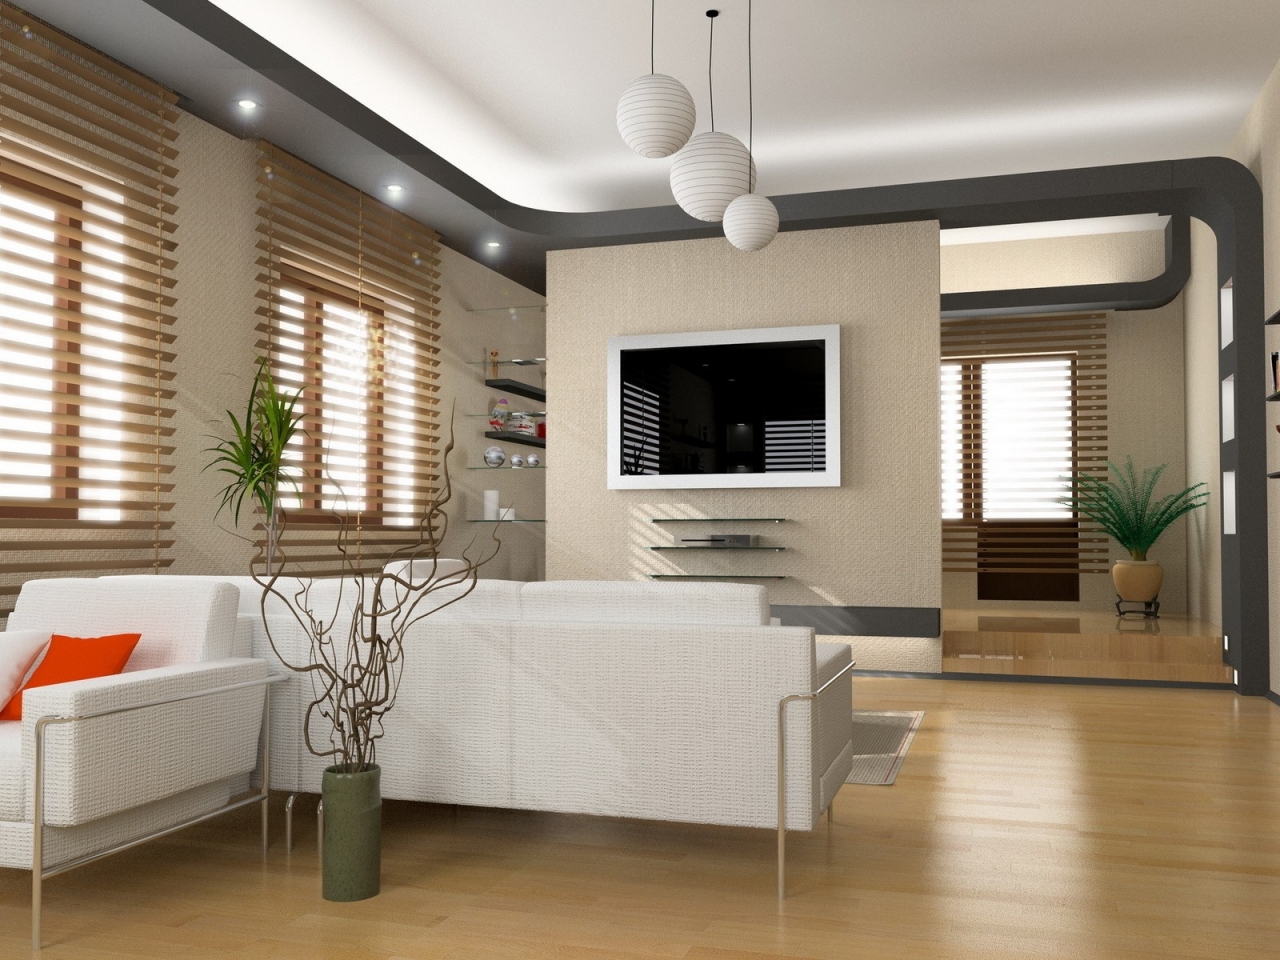 Superb Living Room Design for 1280 x 960 resolution